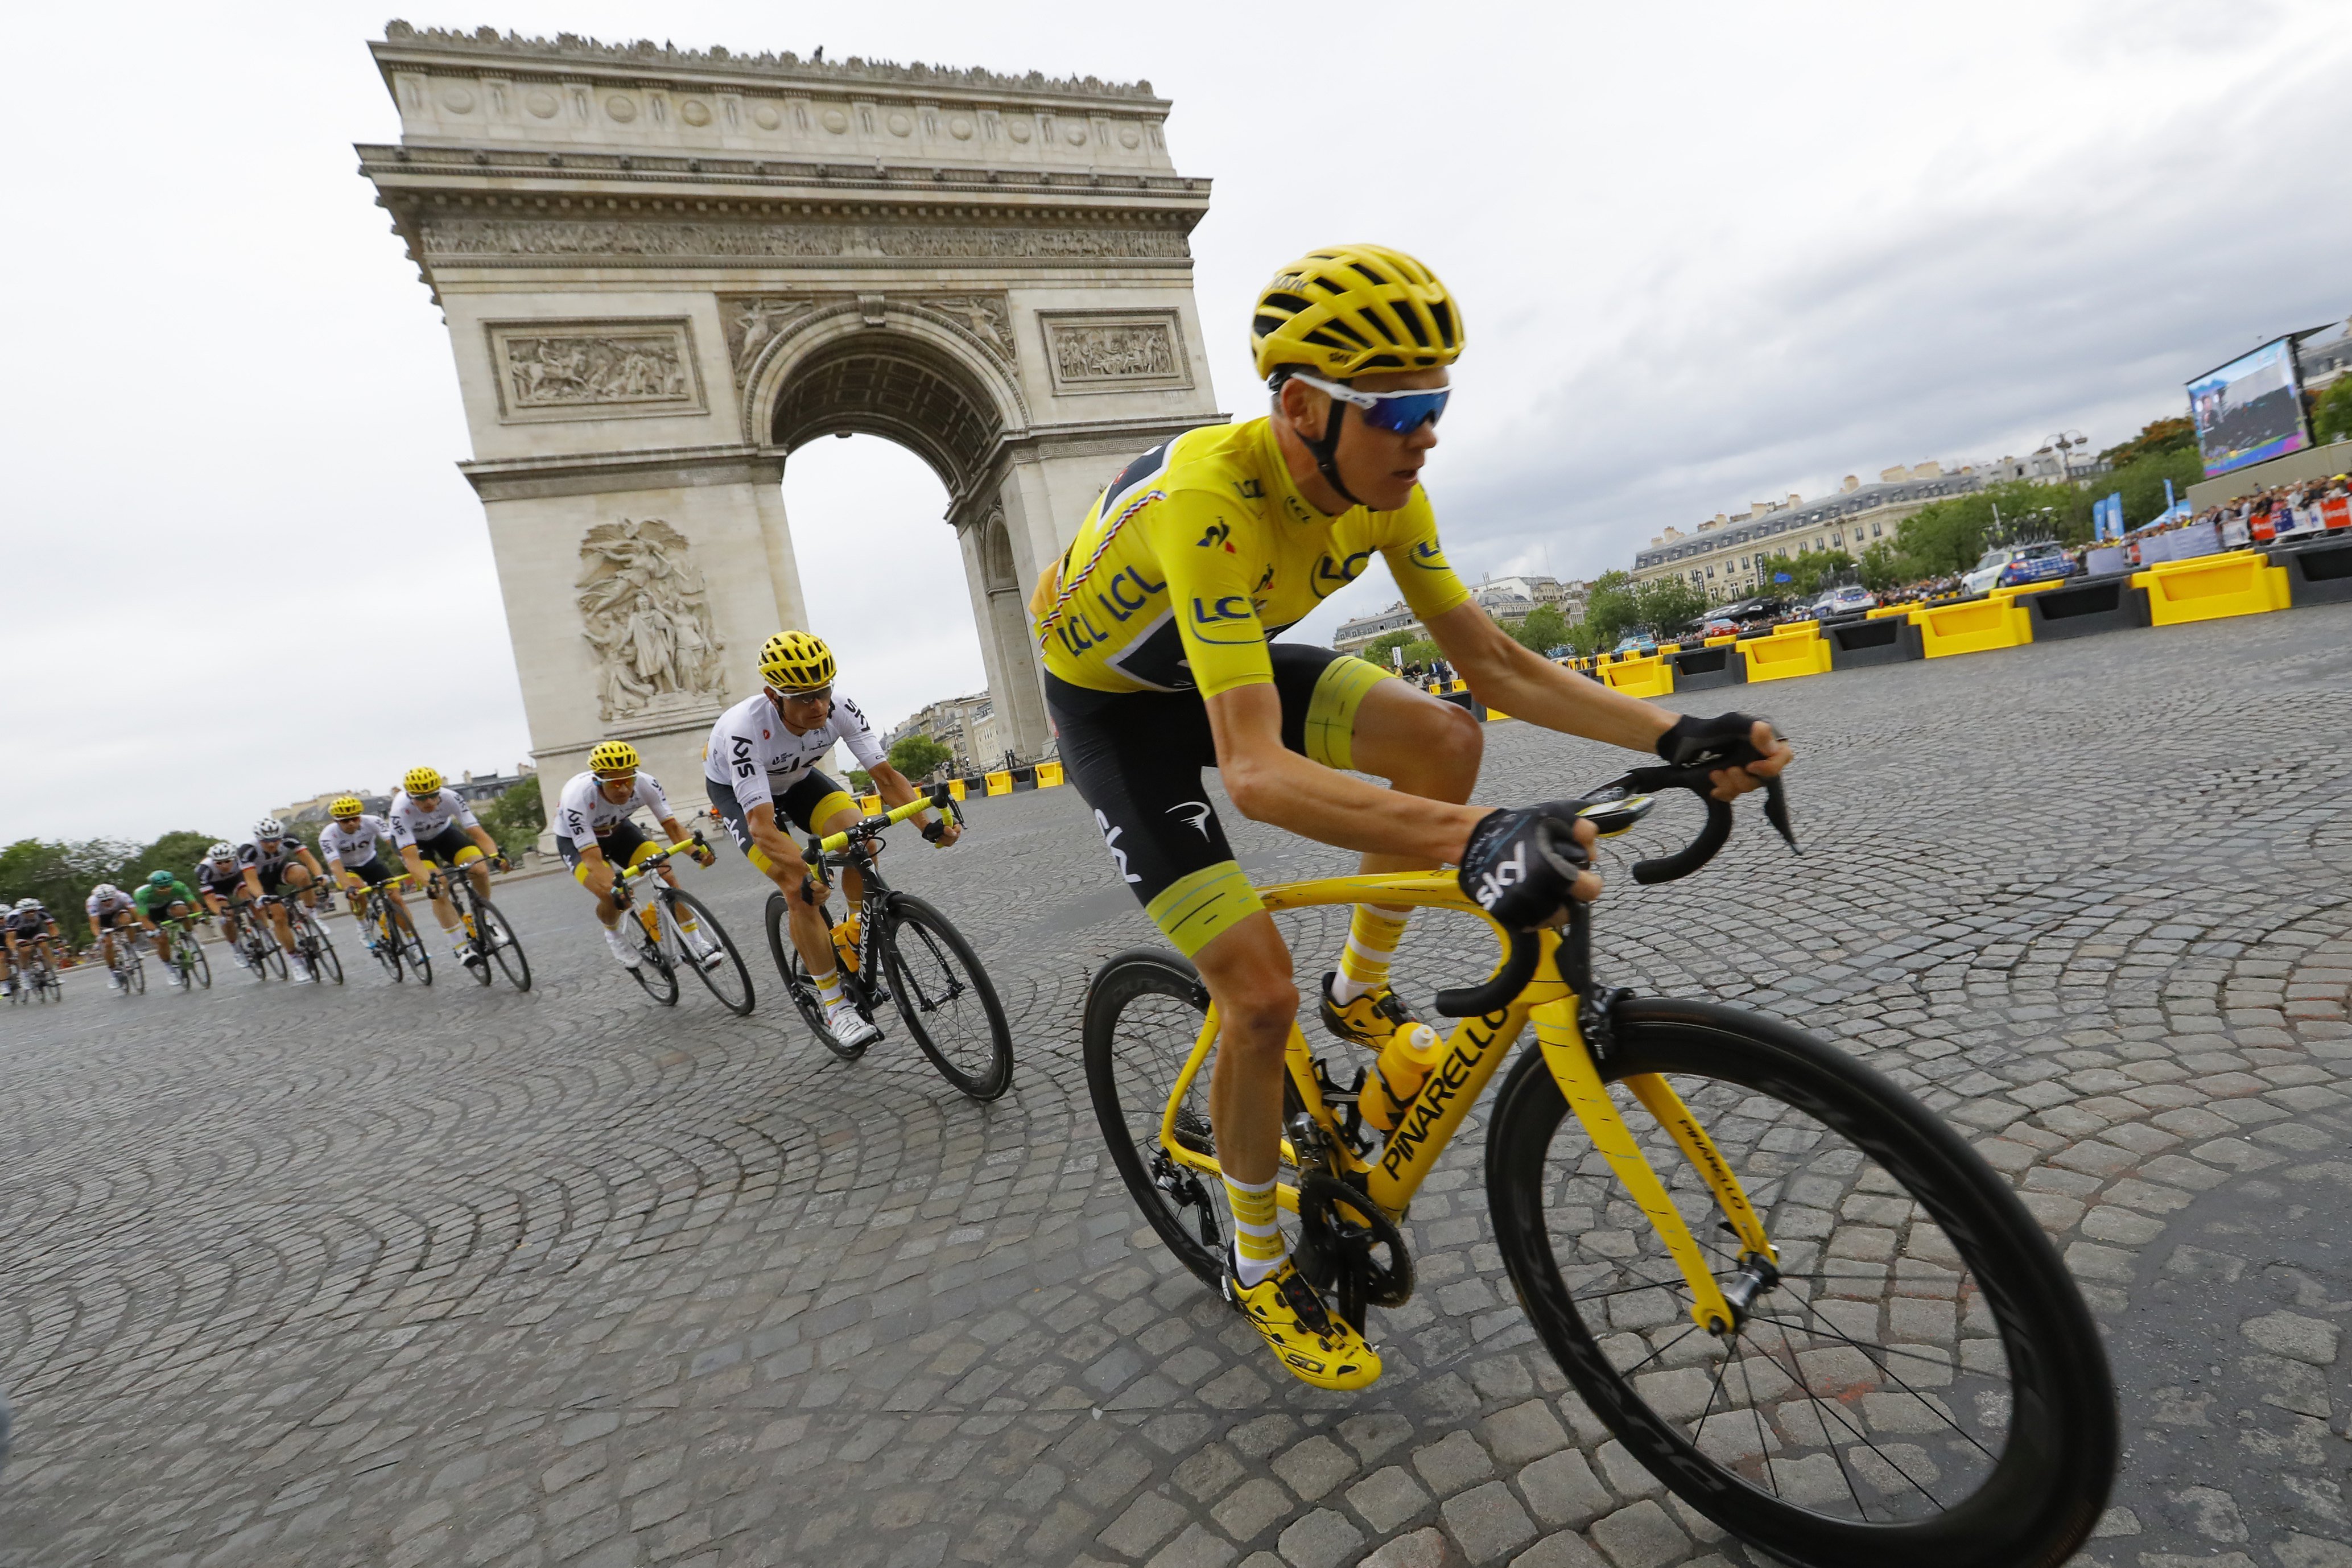 El president de l'UCI és partidari que Froome no vagi al Tour ni al Giro